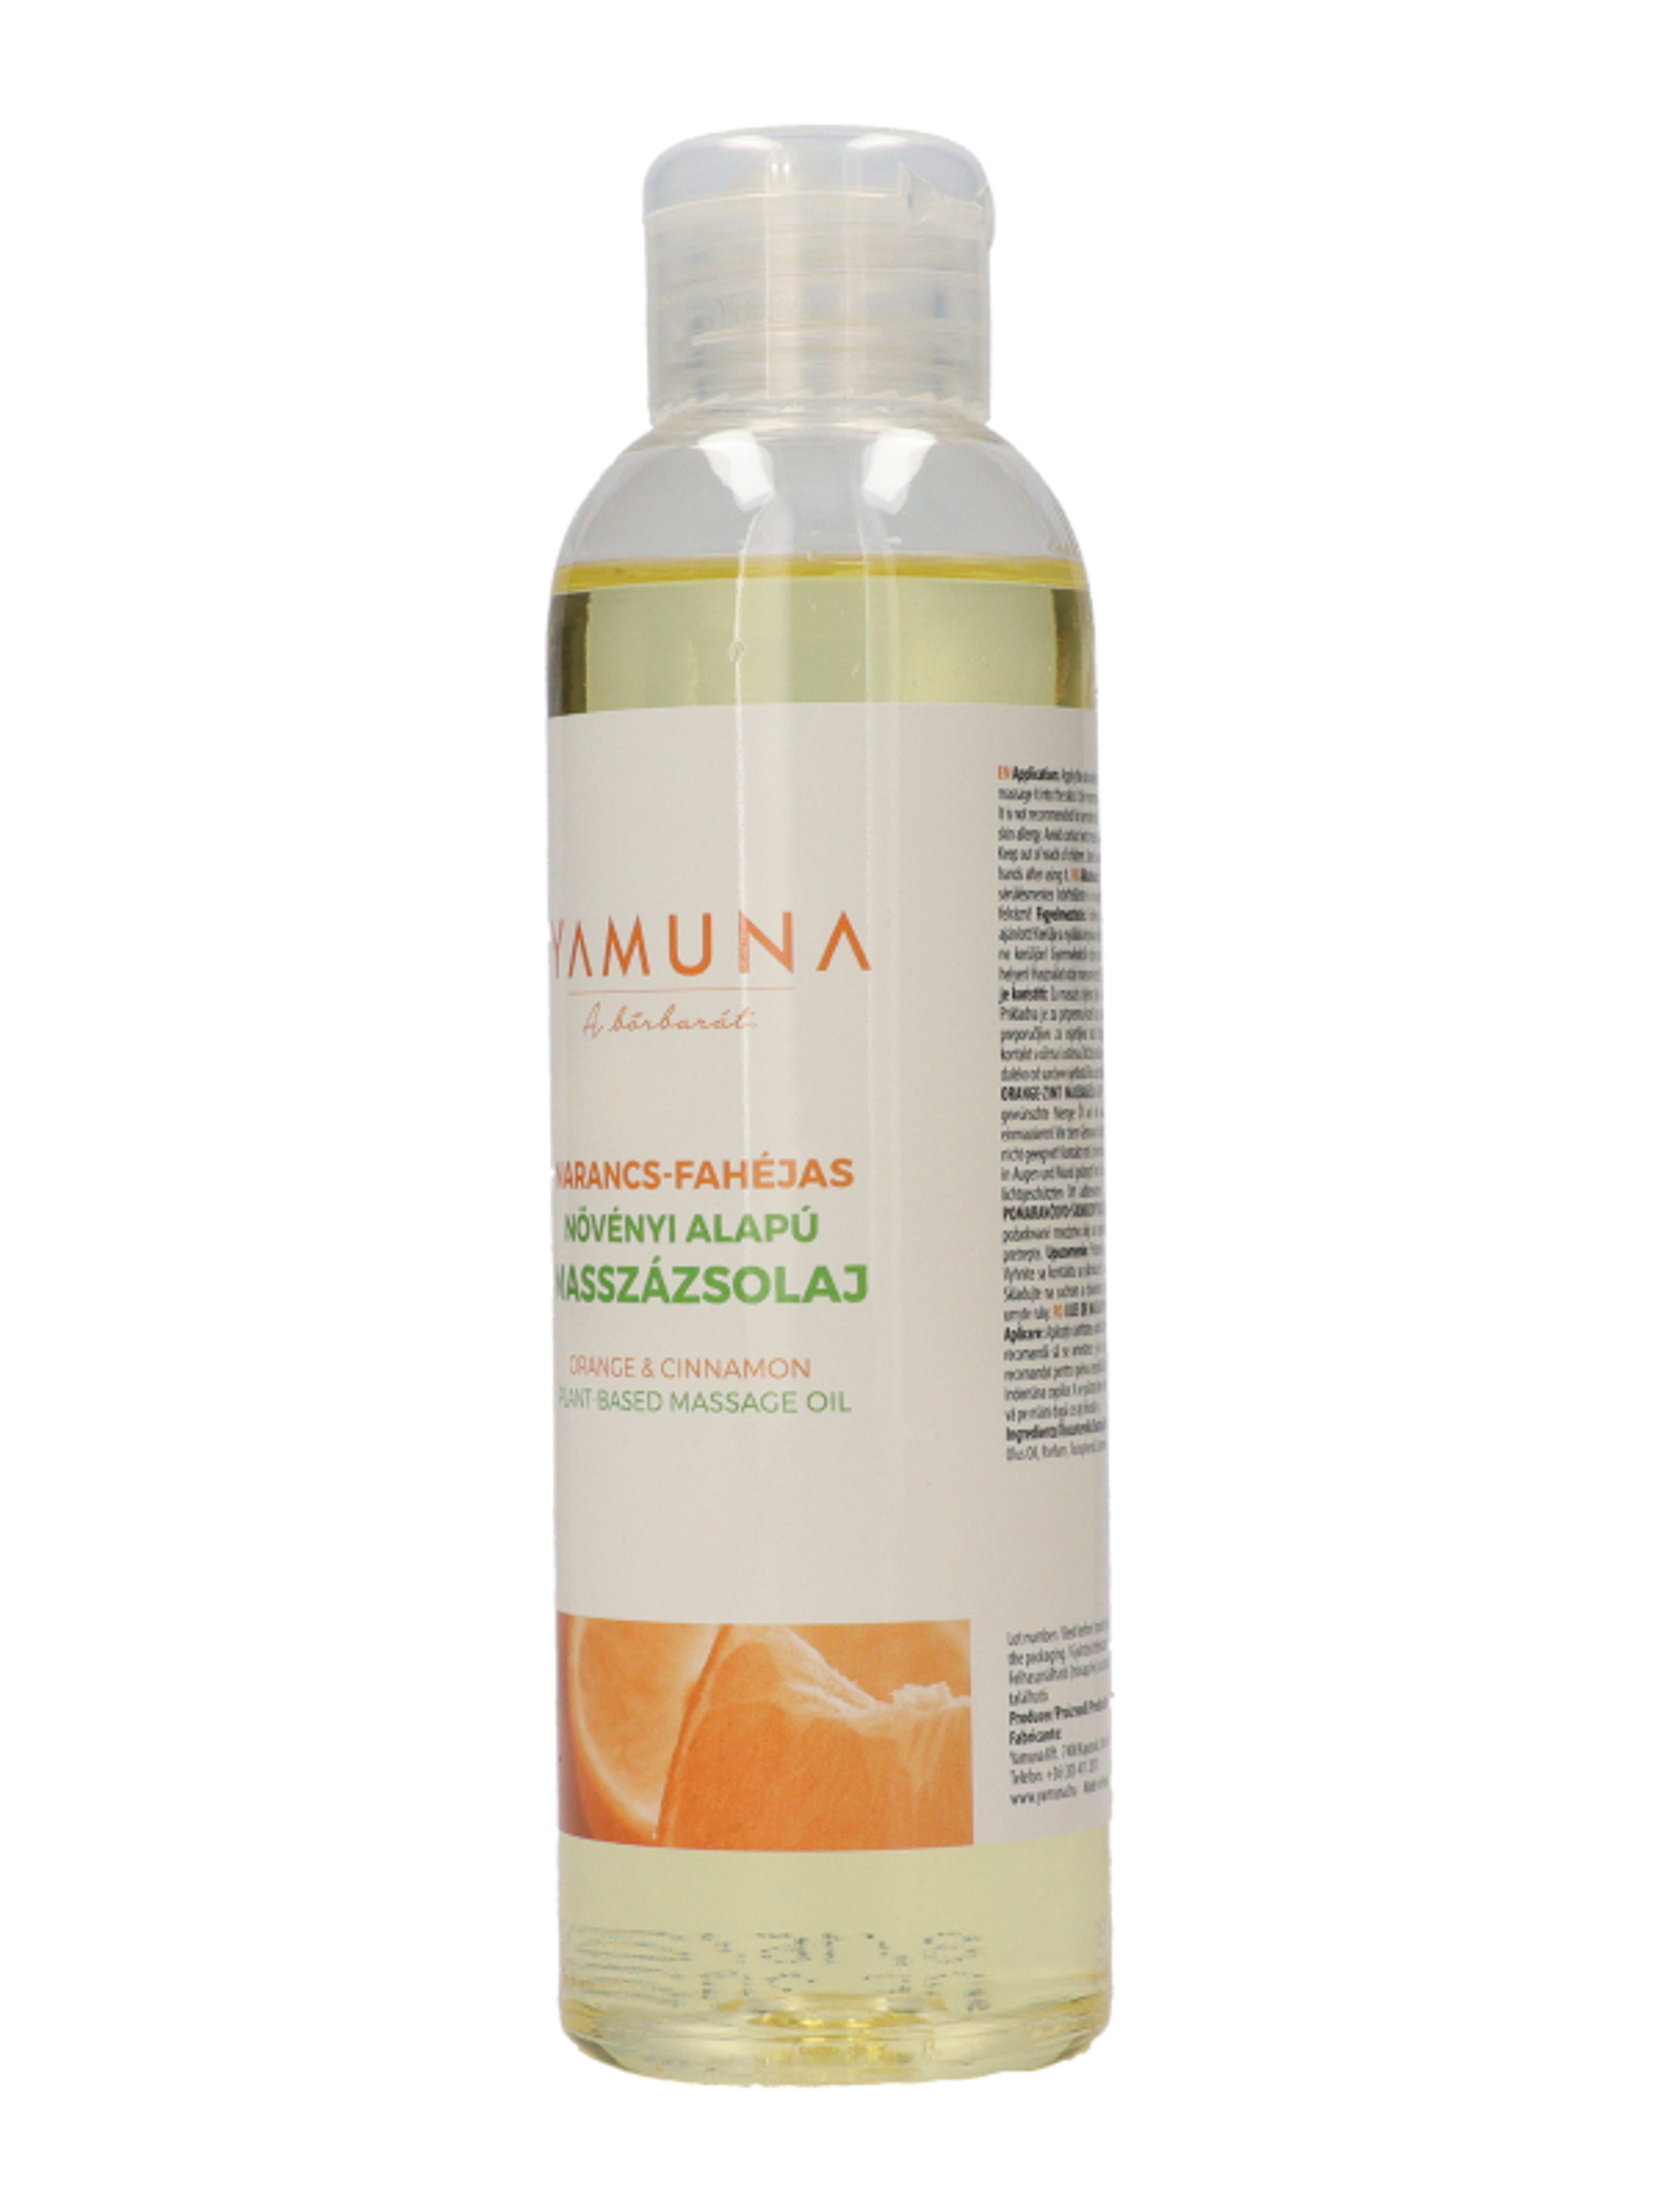 Yamuna Narancs és fahéj illatú masszázsolaj - 250 ml-2